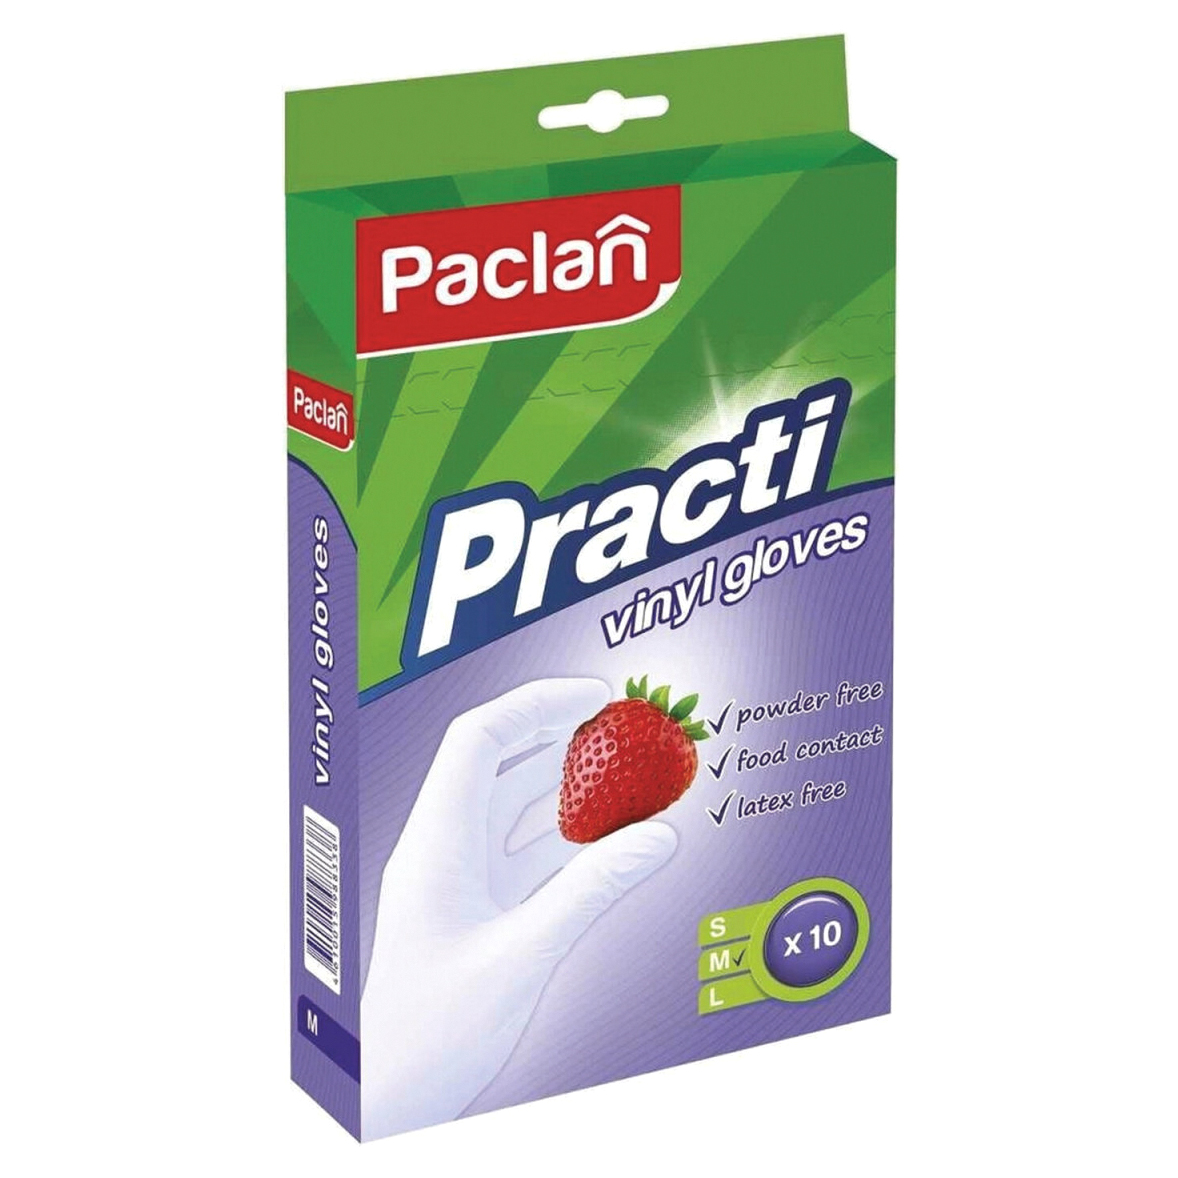 перчатки нитриловые paclan practi размер l 10 шт Перчатки Paclan Practi виниловые M 10 шт